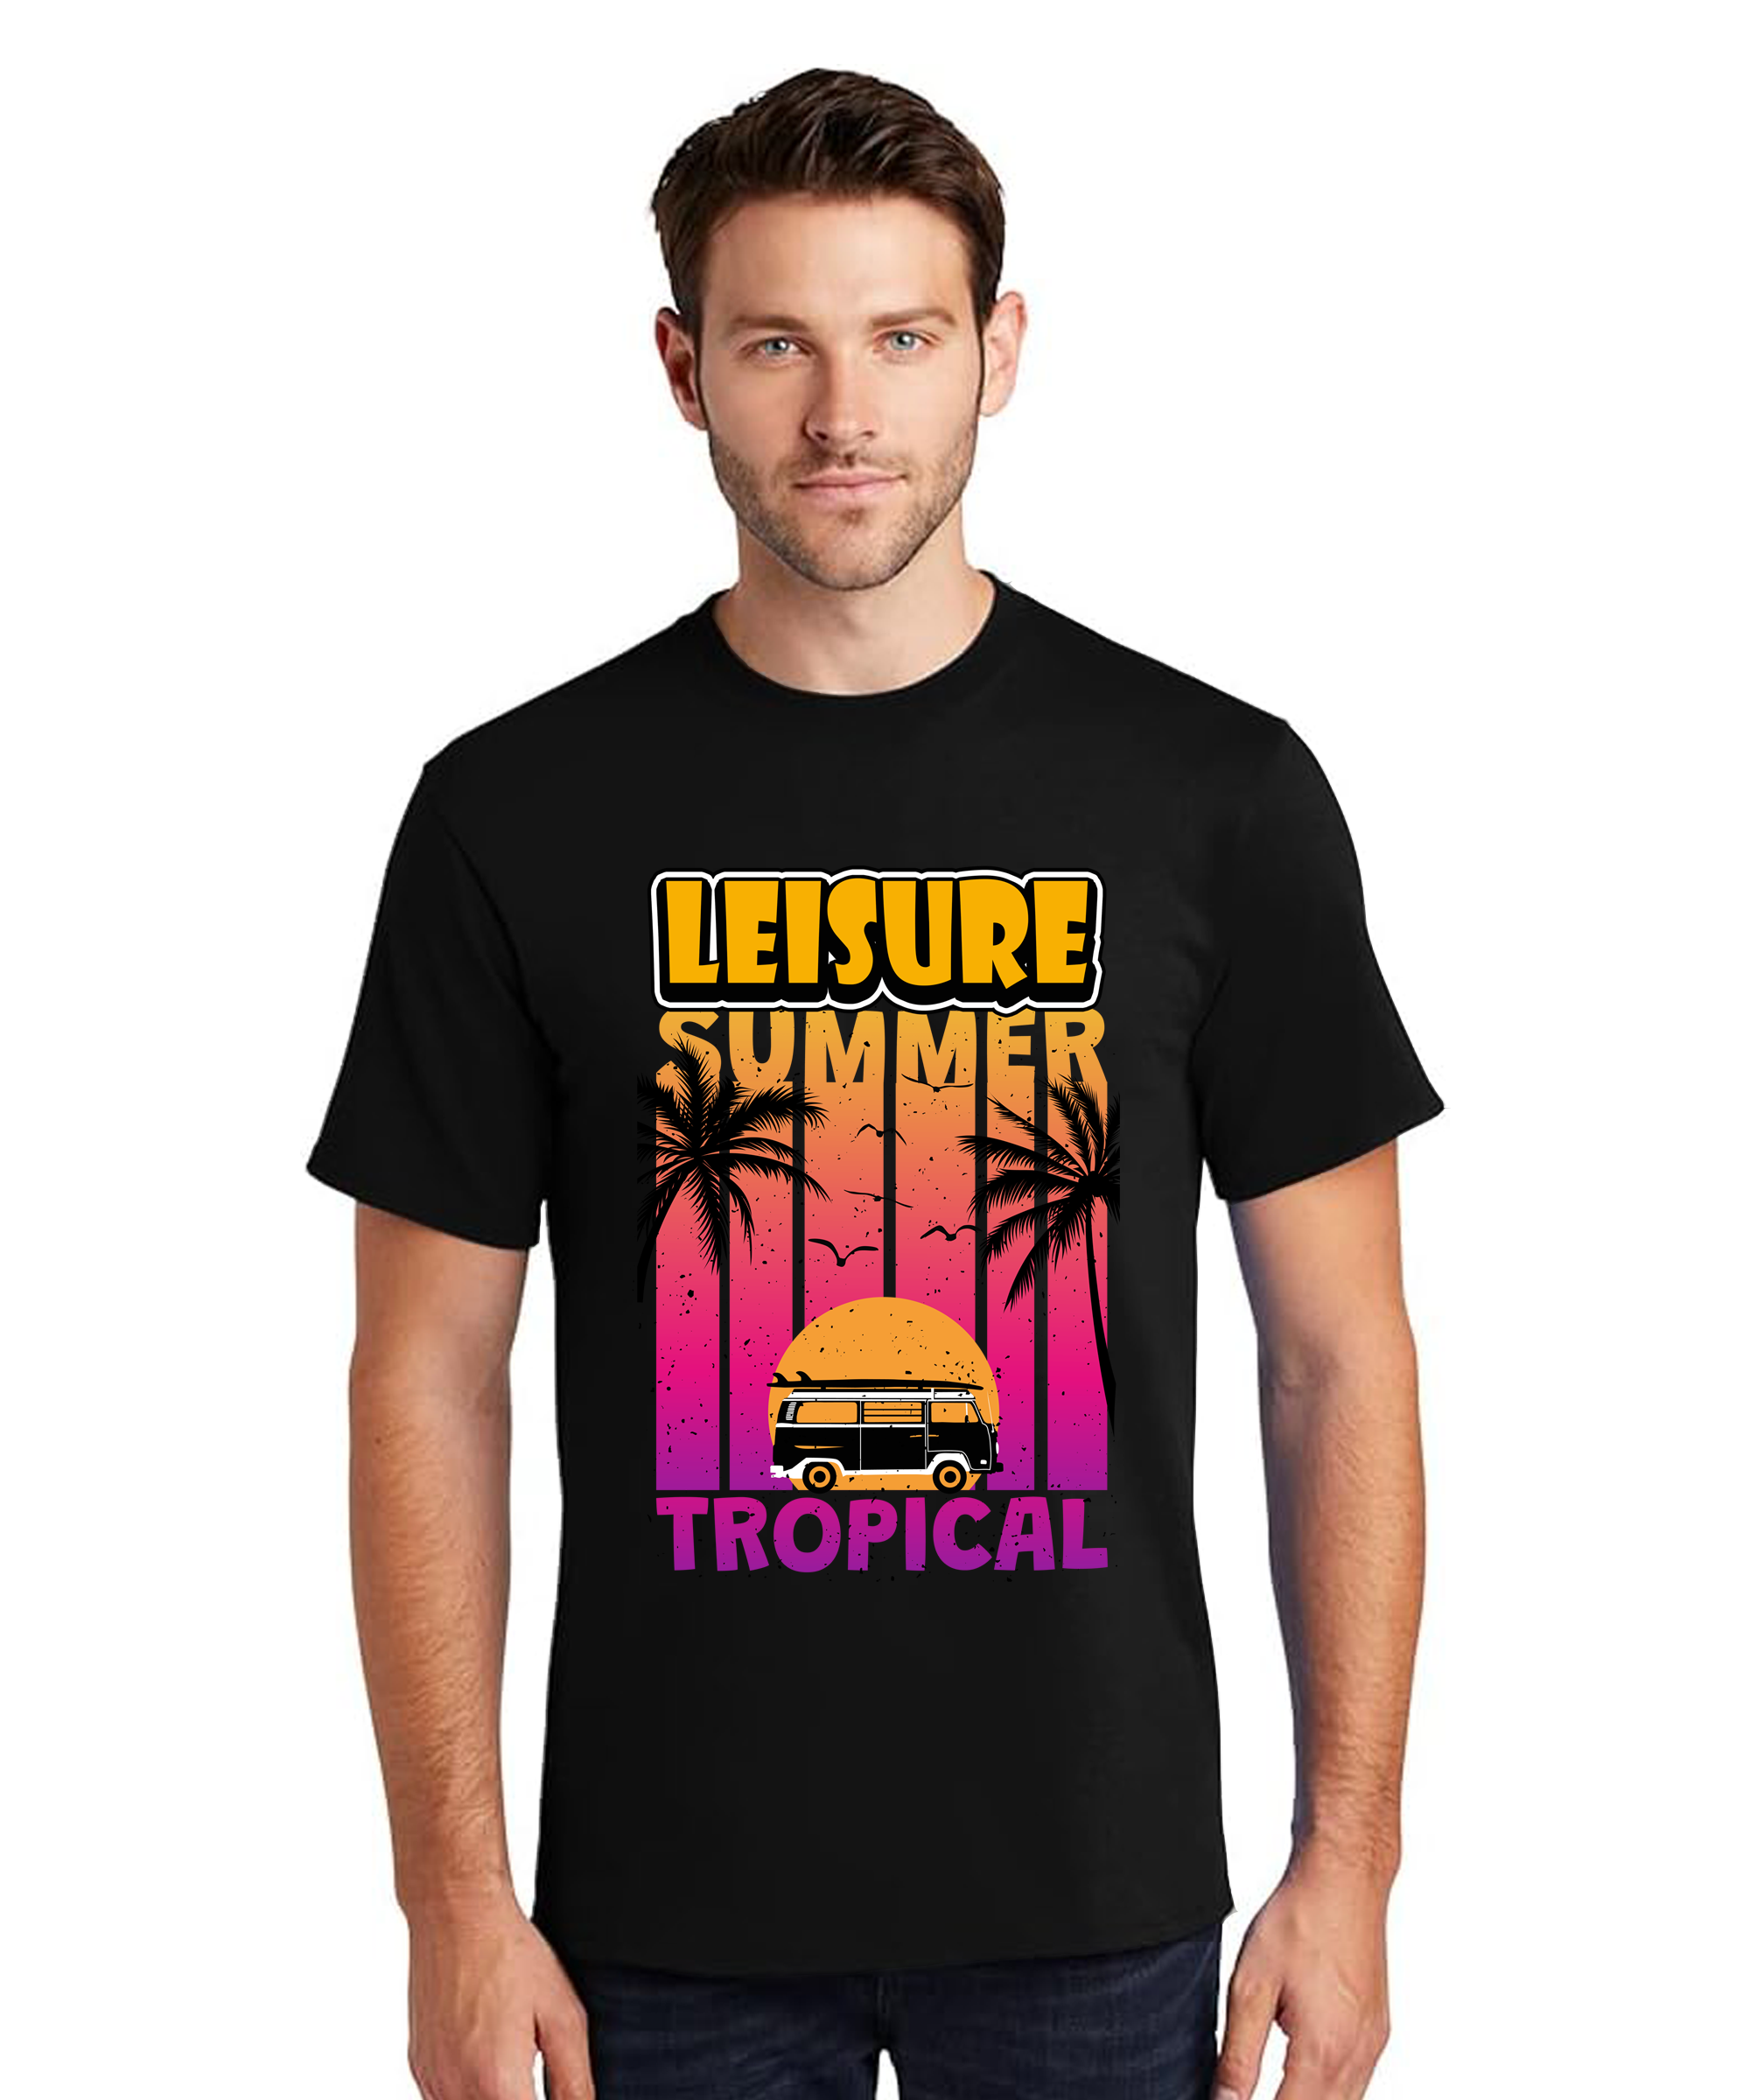 MEN Graphic Print Round Neck T-Shirt LEISURE SUMMER